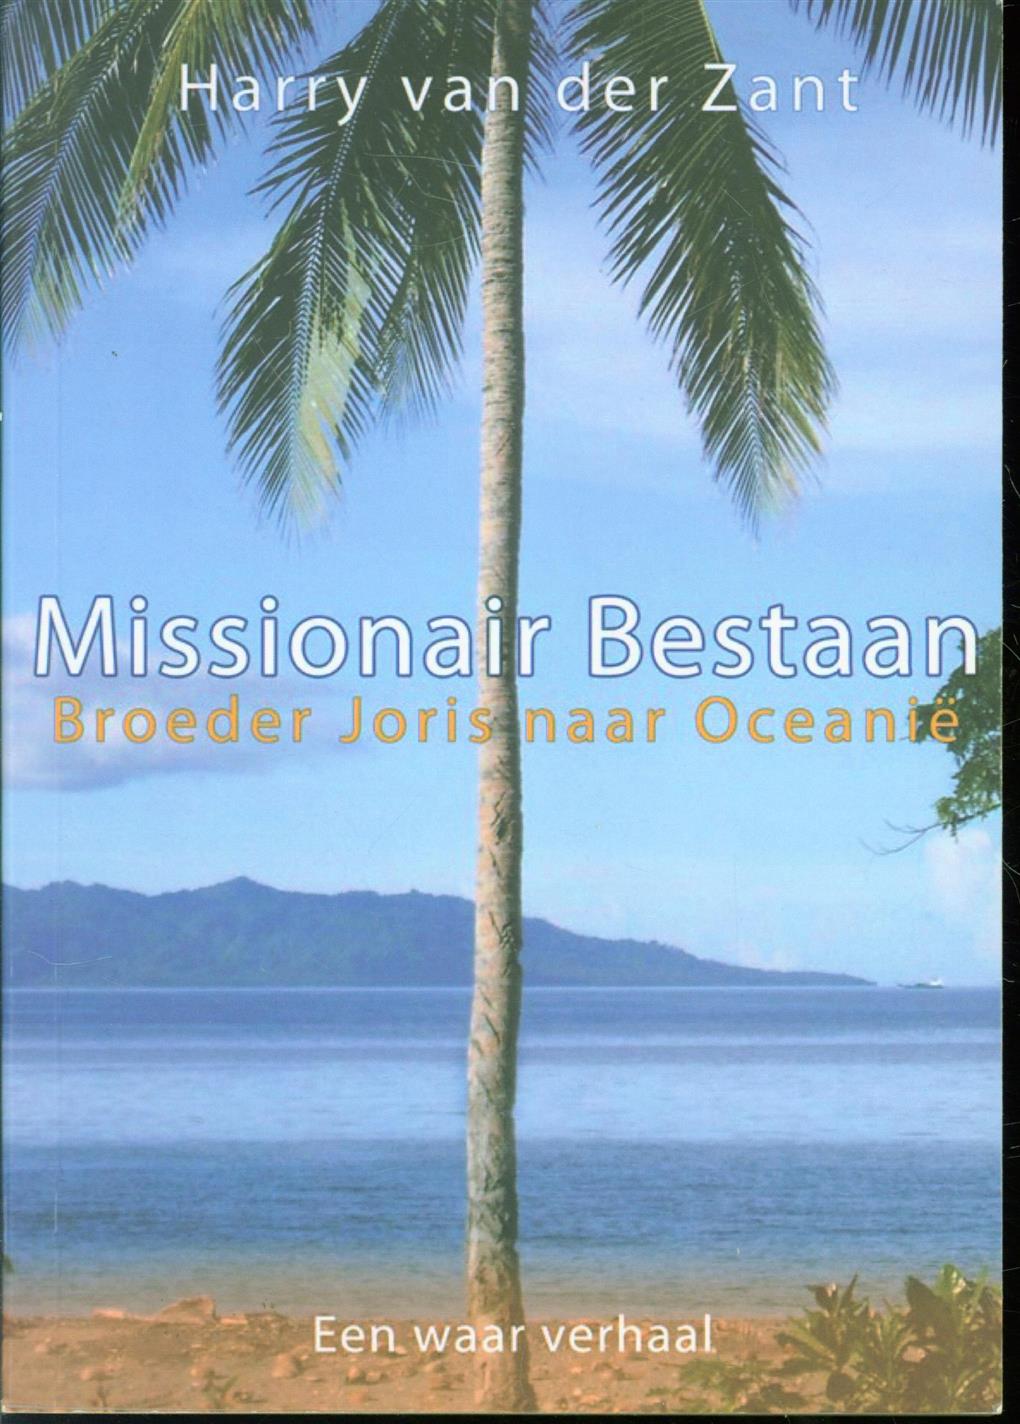 Zant, Harry C.M. van der - Missionair bestaan, broeder Joris naar Oceani , een waar verhaal